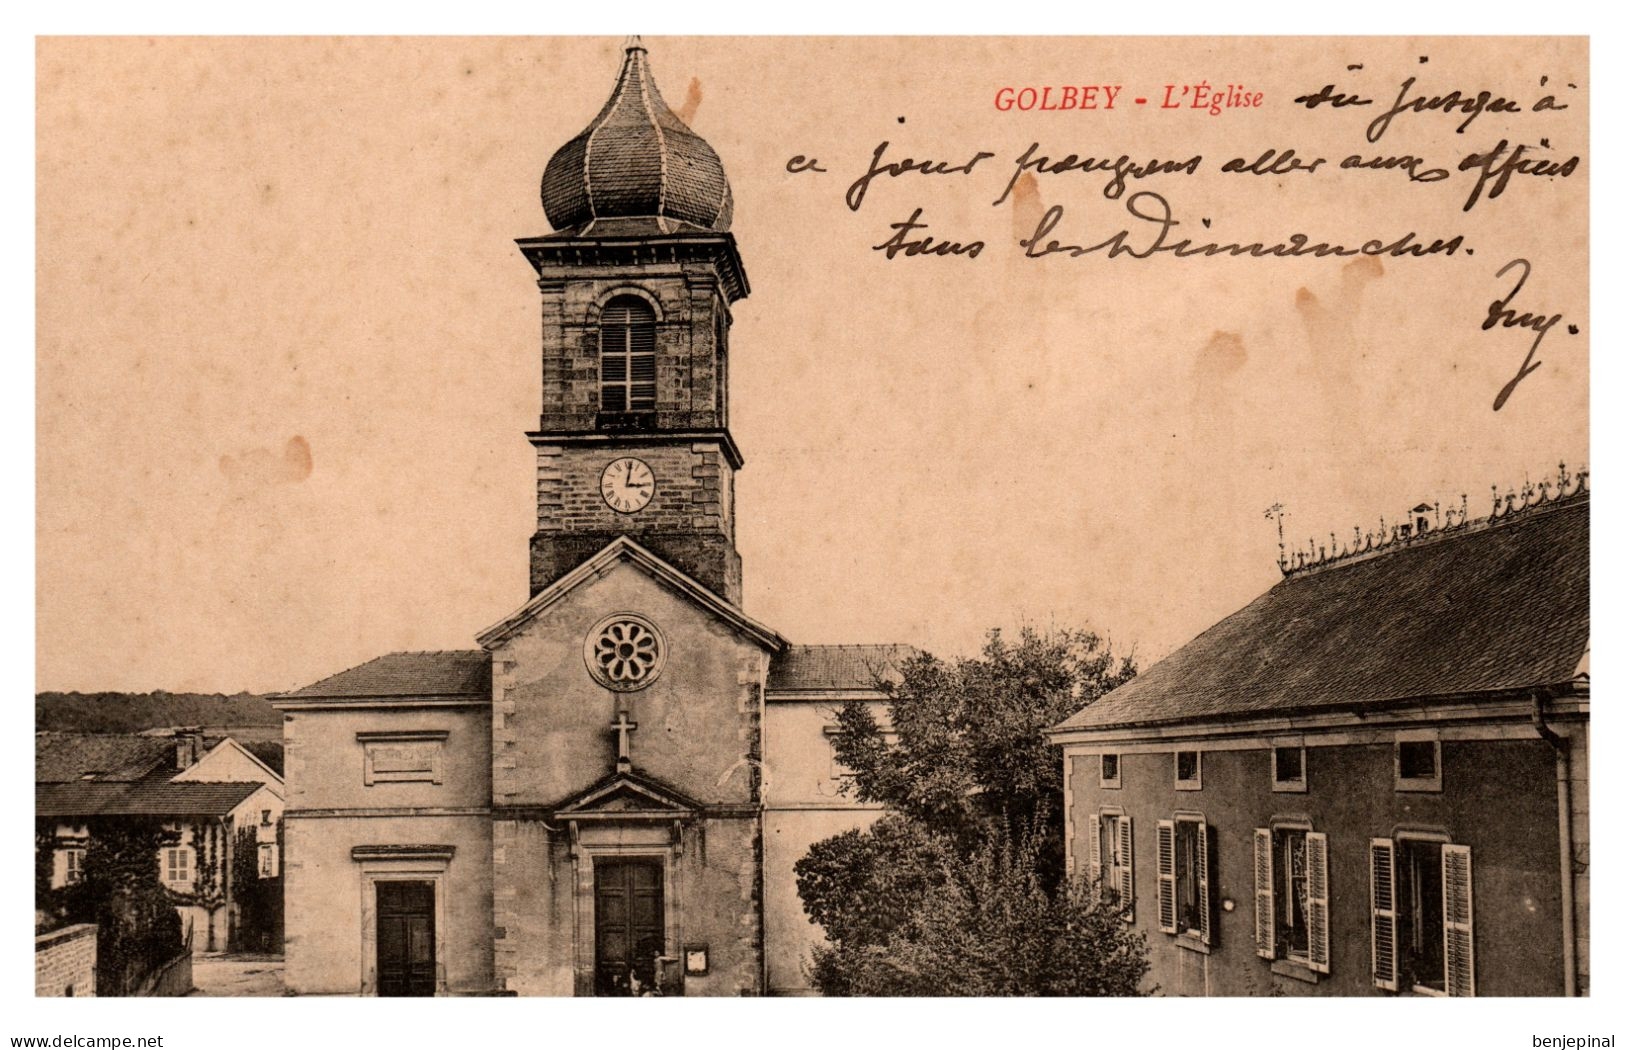 Golbey - L'Eglise - Golbey